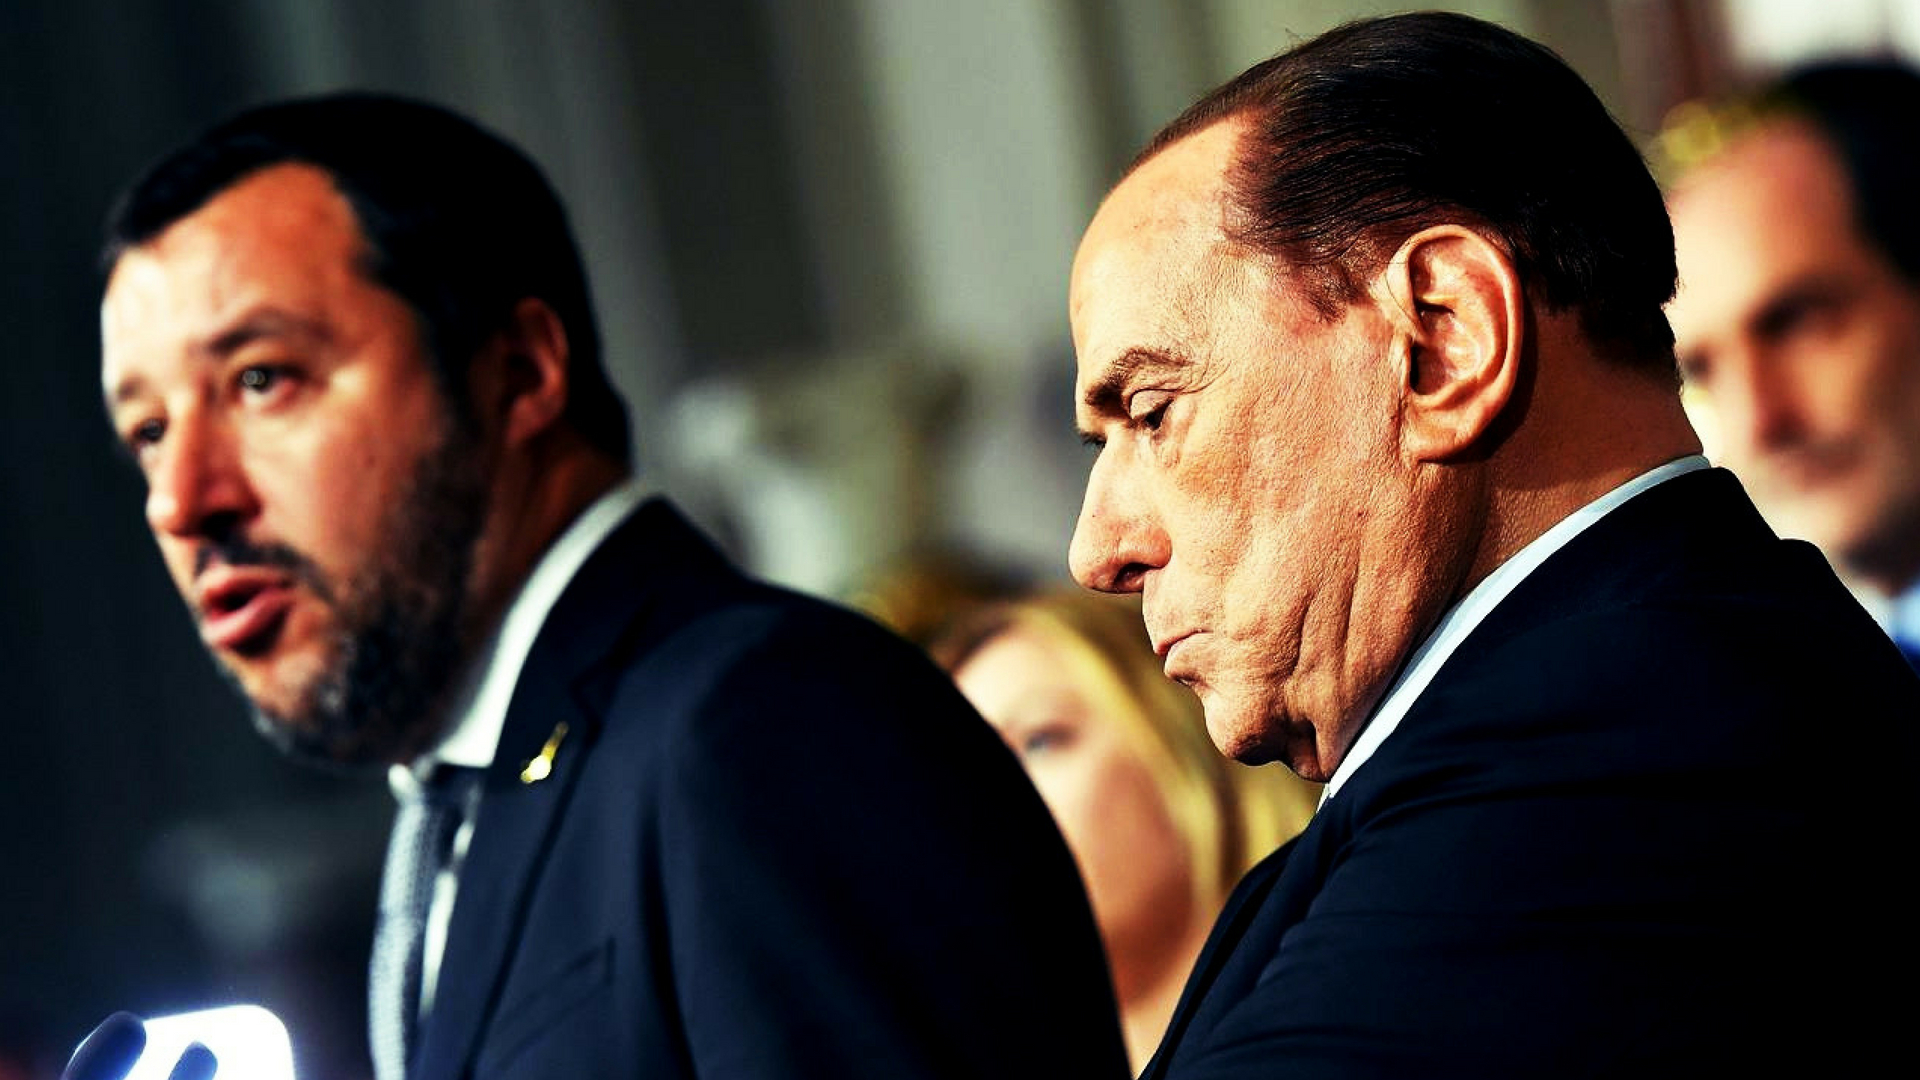 La solitudine di Berlusconi